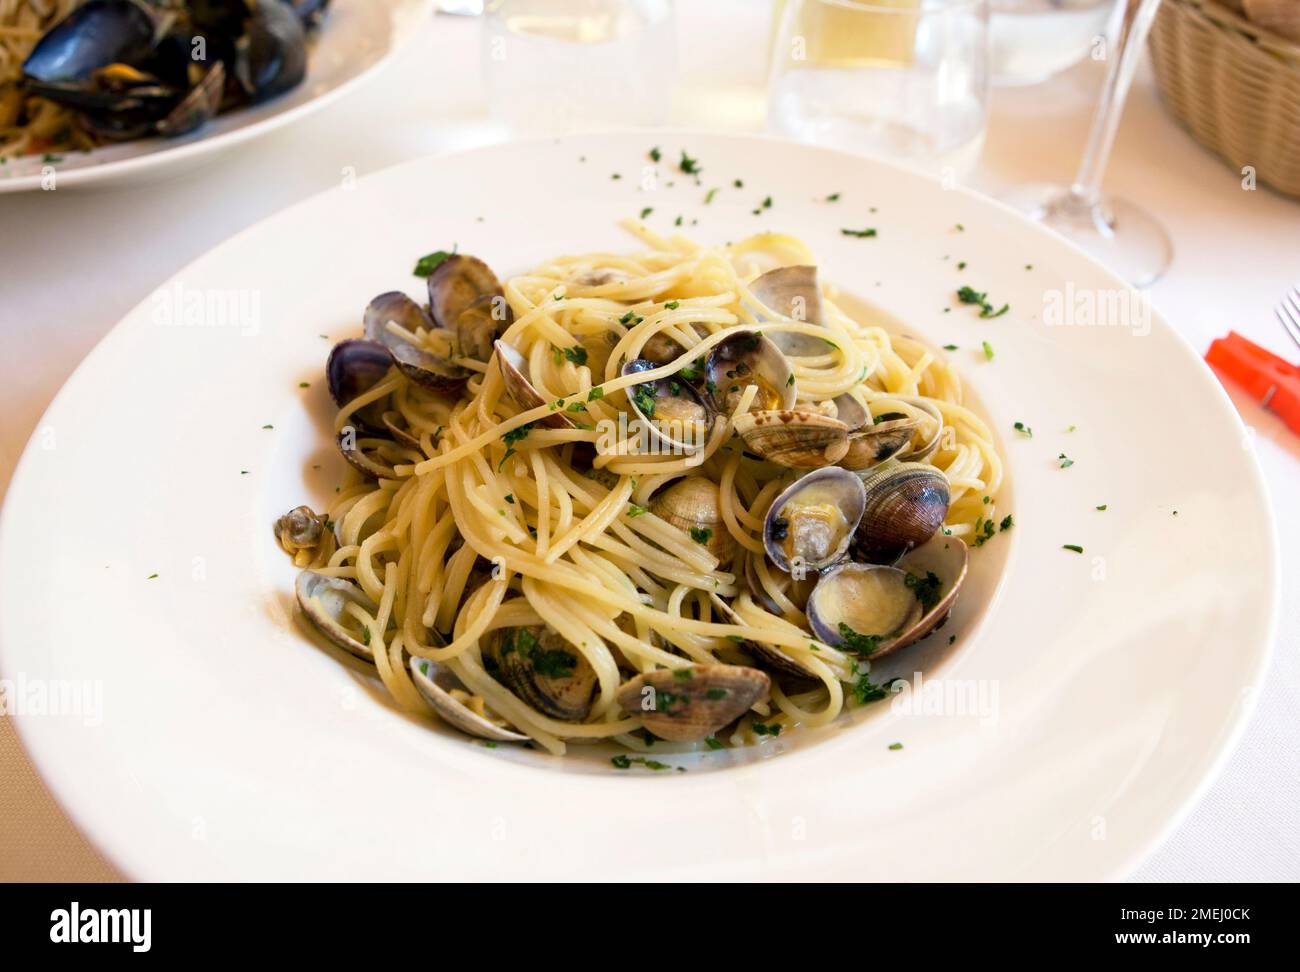 Spaghetti vongole at a restaurant in Marano Lagunare Stock Photo